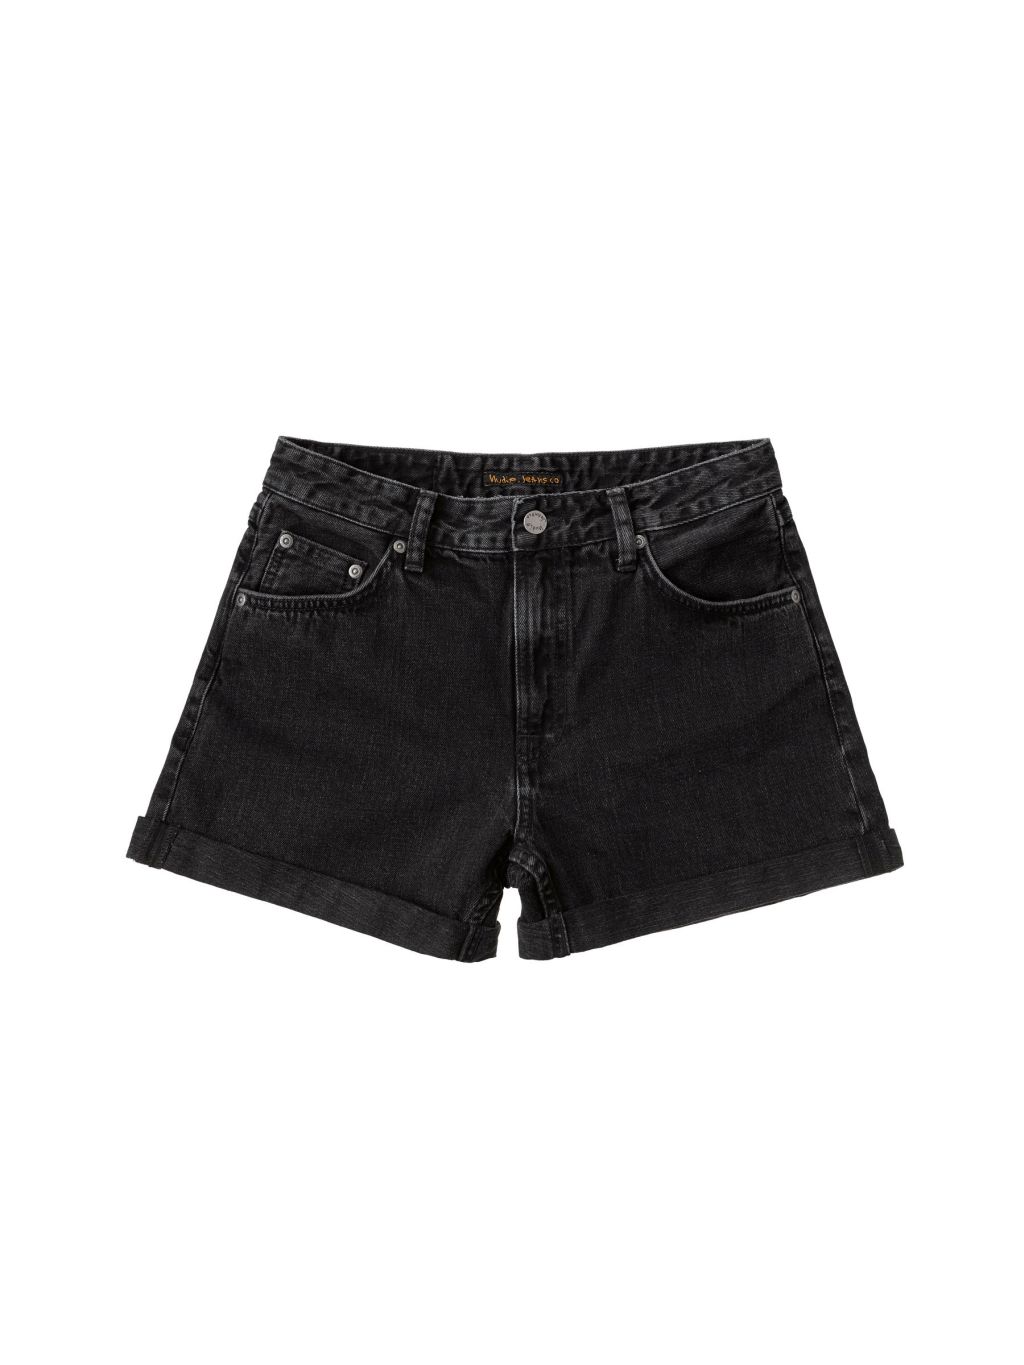 Jeans-Shorts Black Trace black 30